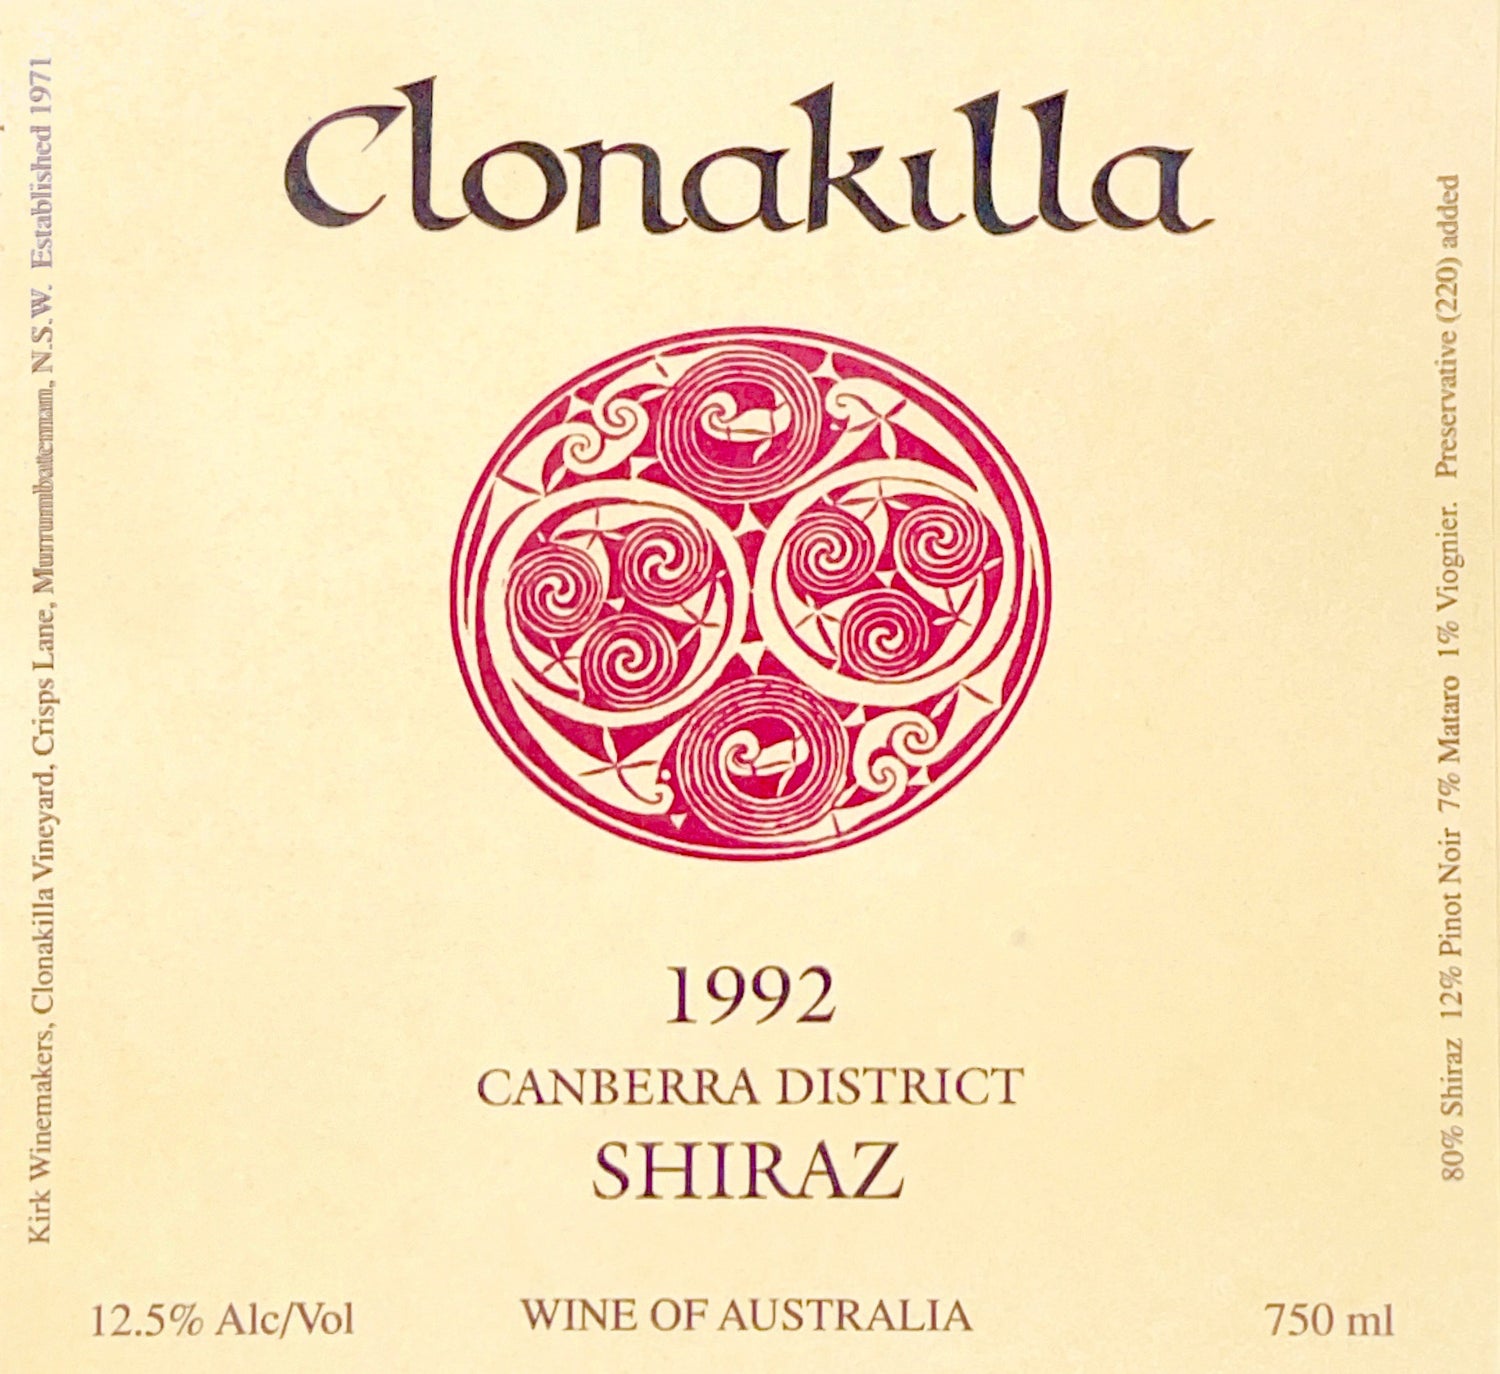 Clonakilla 1992 Shiraz label